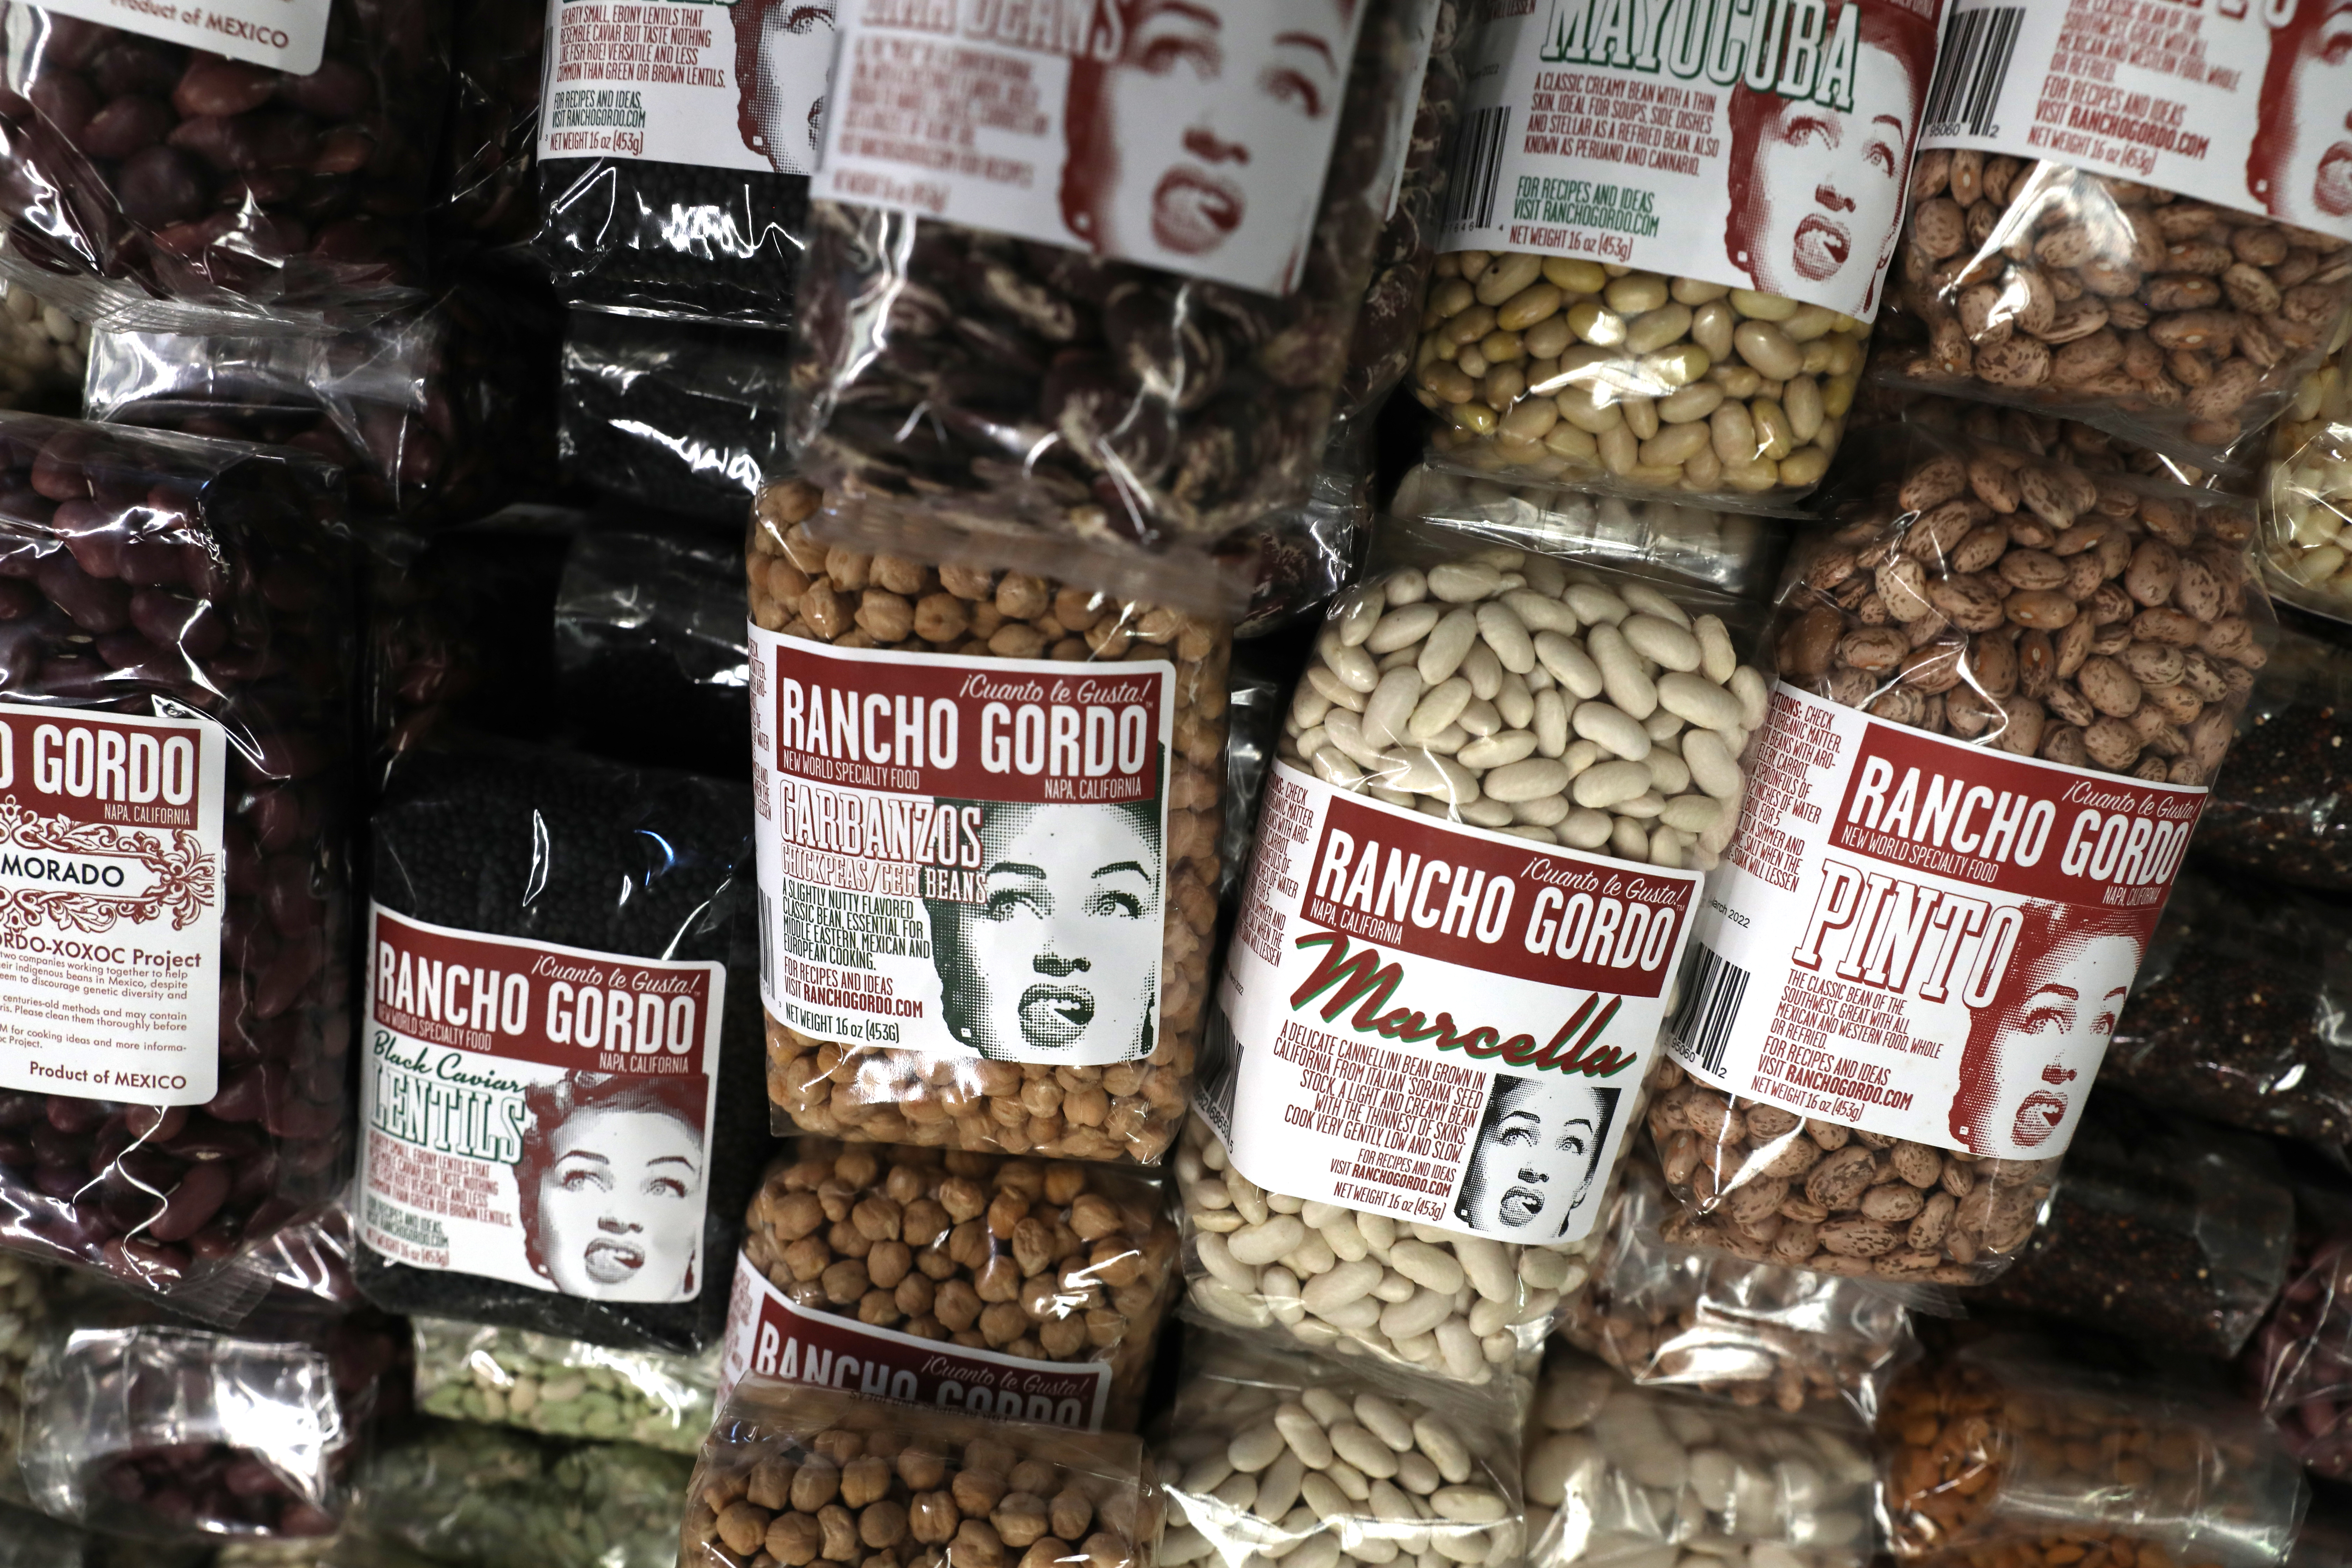 A selection of Rancho Gordo beans